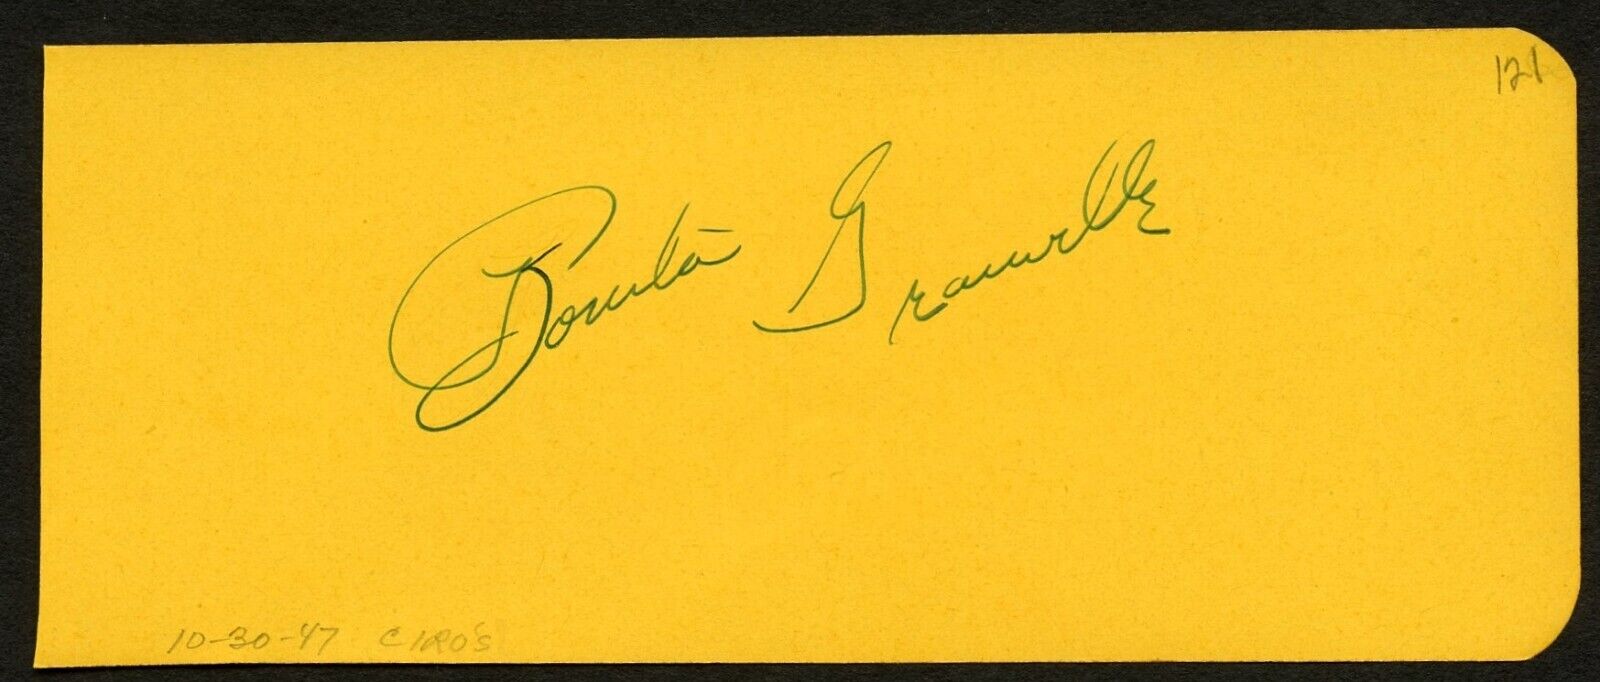 Bonita Granville d1988 signed 2x5 autograph on 10-30-47 at Ciro's Night Club LA